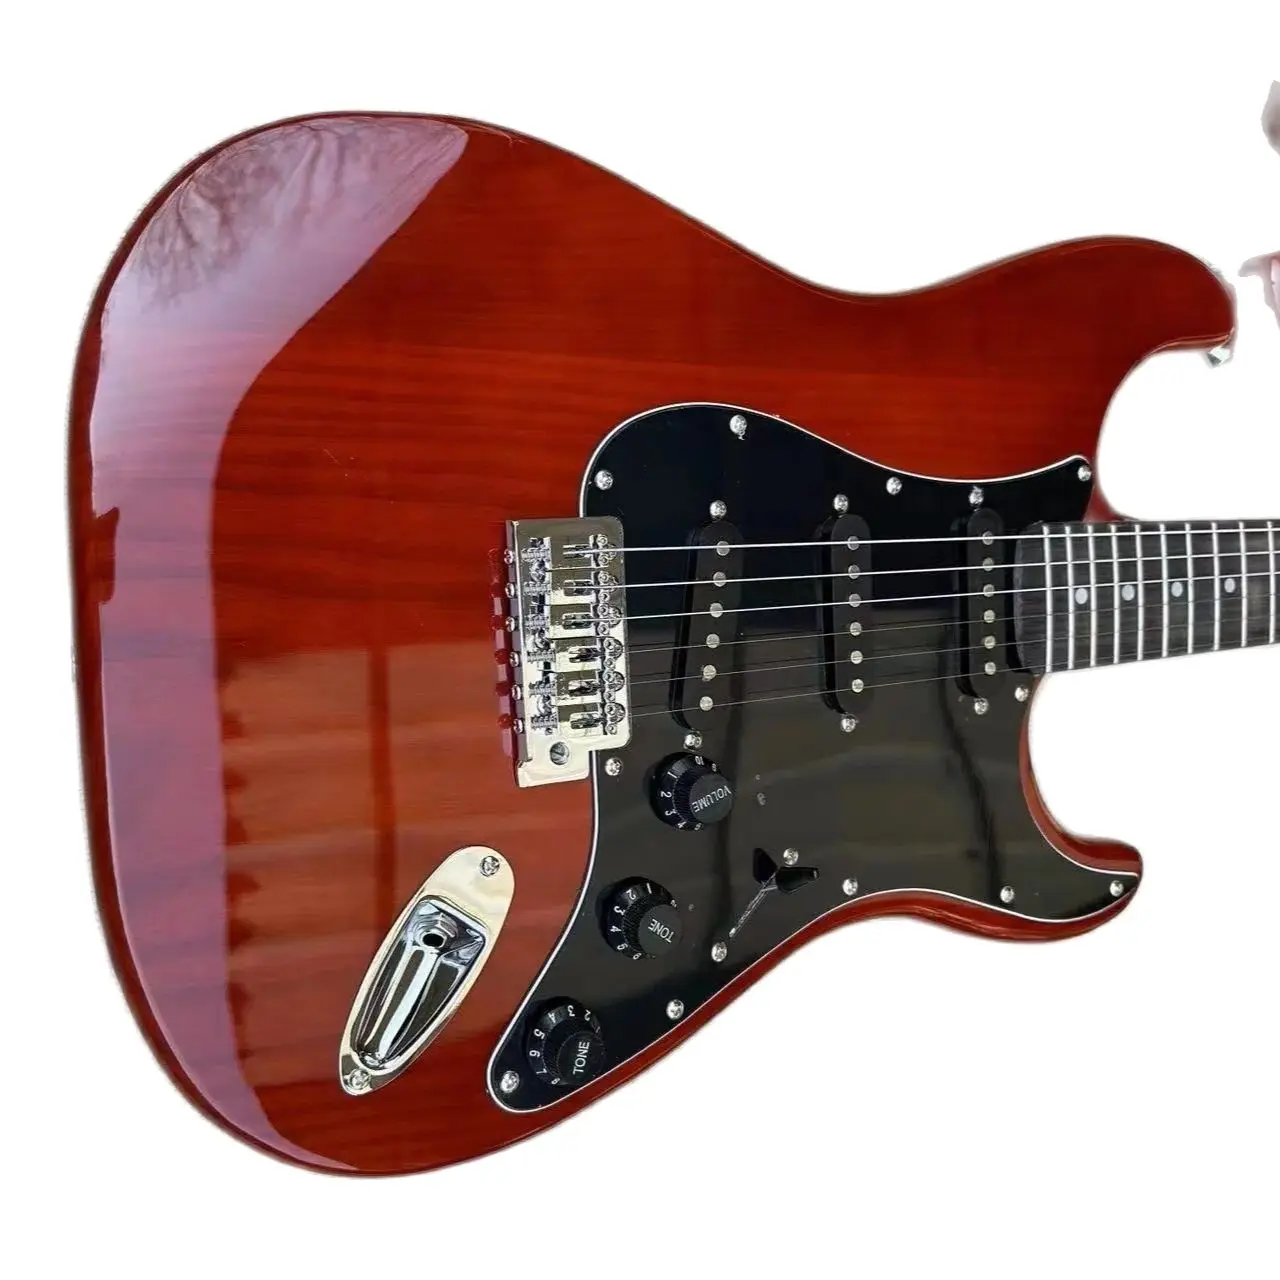 

ST электрическая гитара прозрачный желтый цвет корпус красное дерево клен гриф высокое качество гитара бесплатная доставка